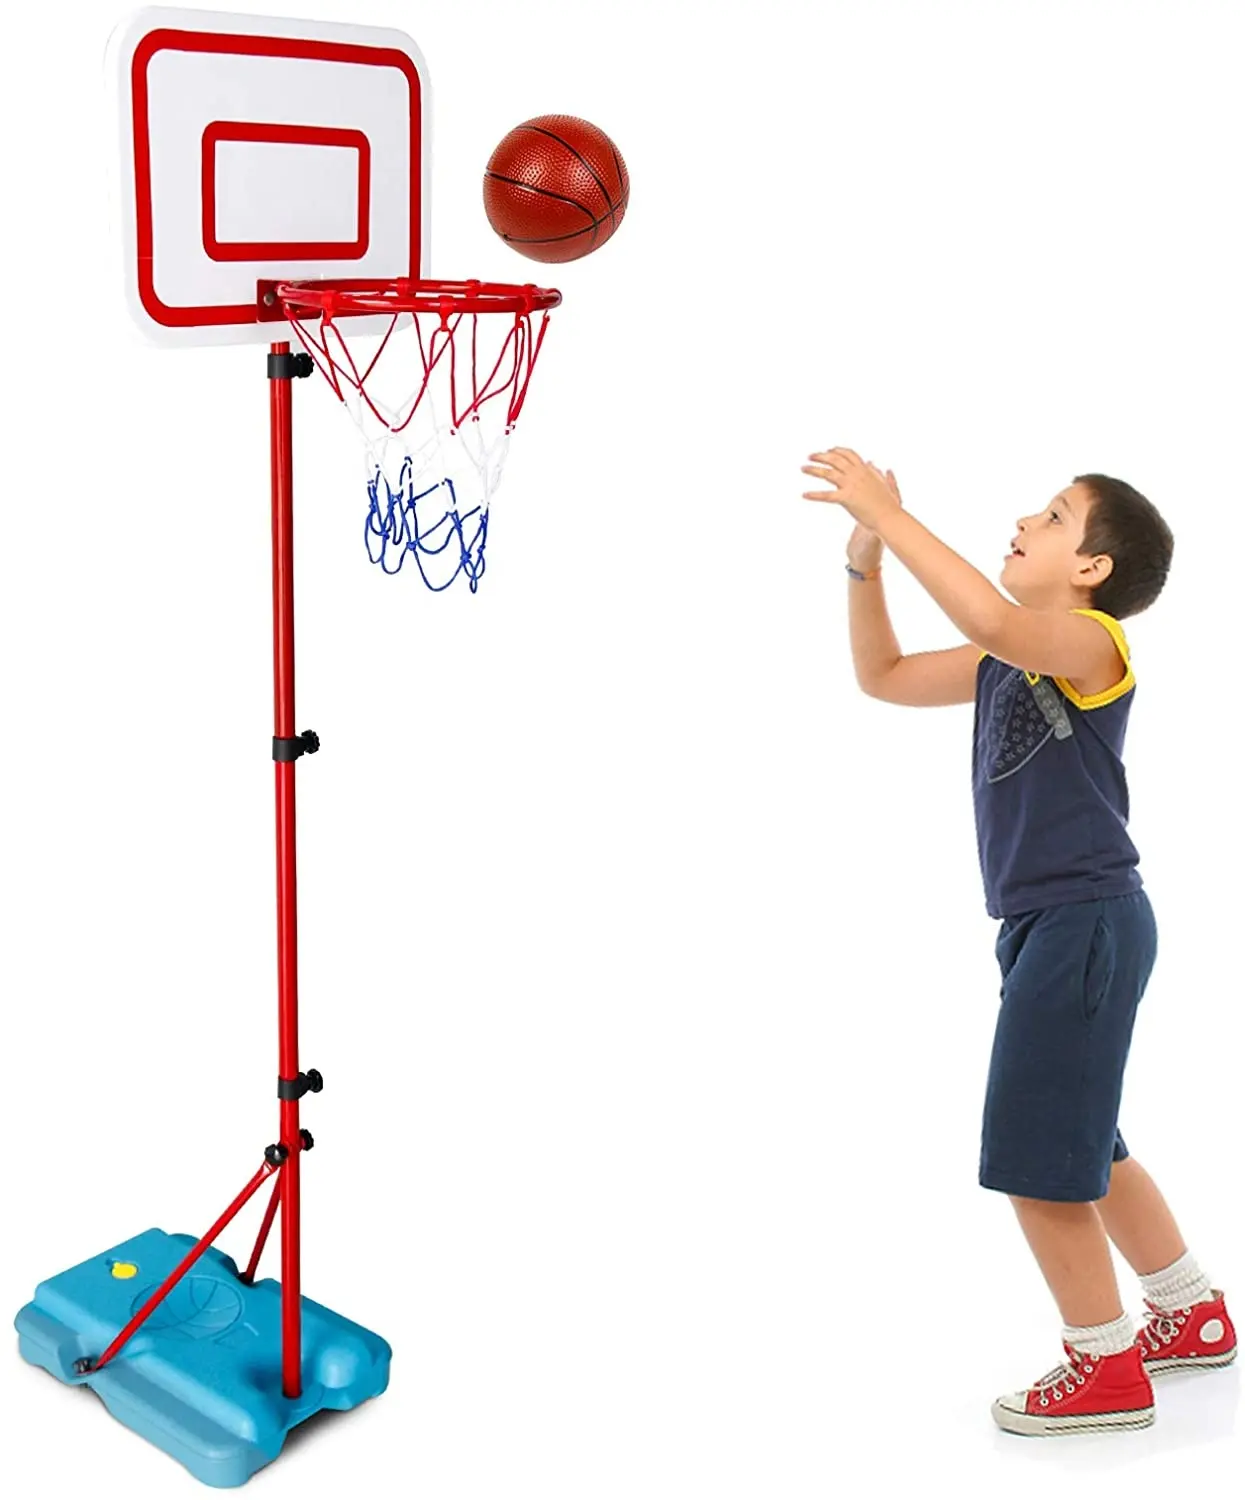 حار المبيعات كرة سلة للأطفال اللعب متعة لعبة رياضية لعب قابل للتعديل حامل كرة السلة المحمول هوب الاطفال لعبة رياضية للأطفال